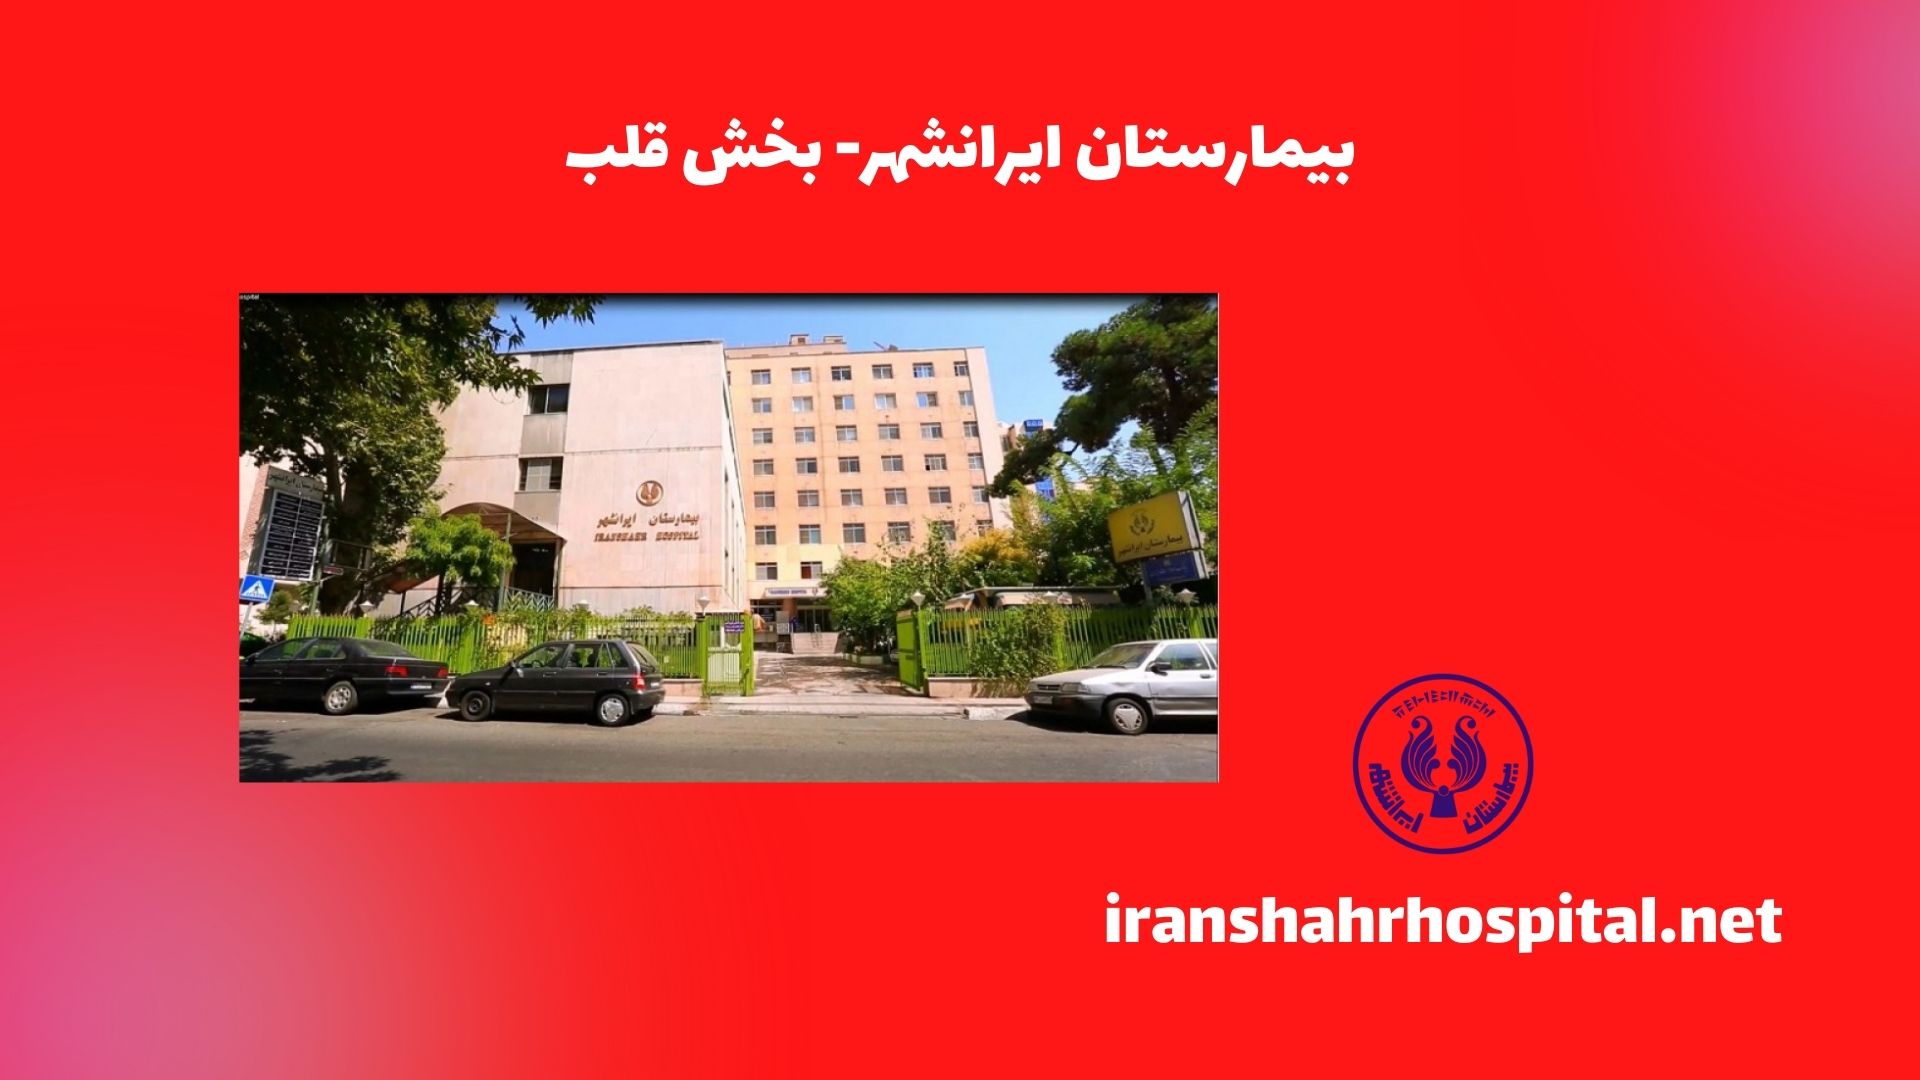 بیمارستان ایرانشهر- بخش قلب